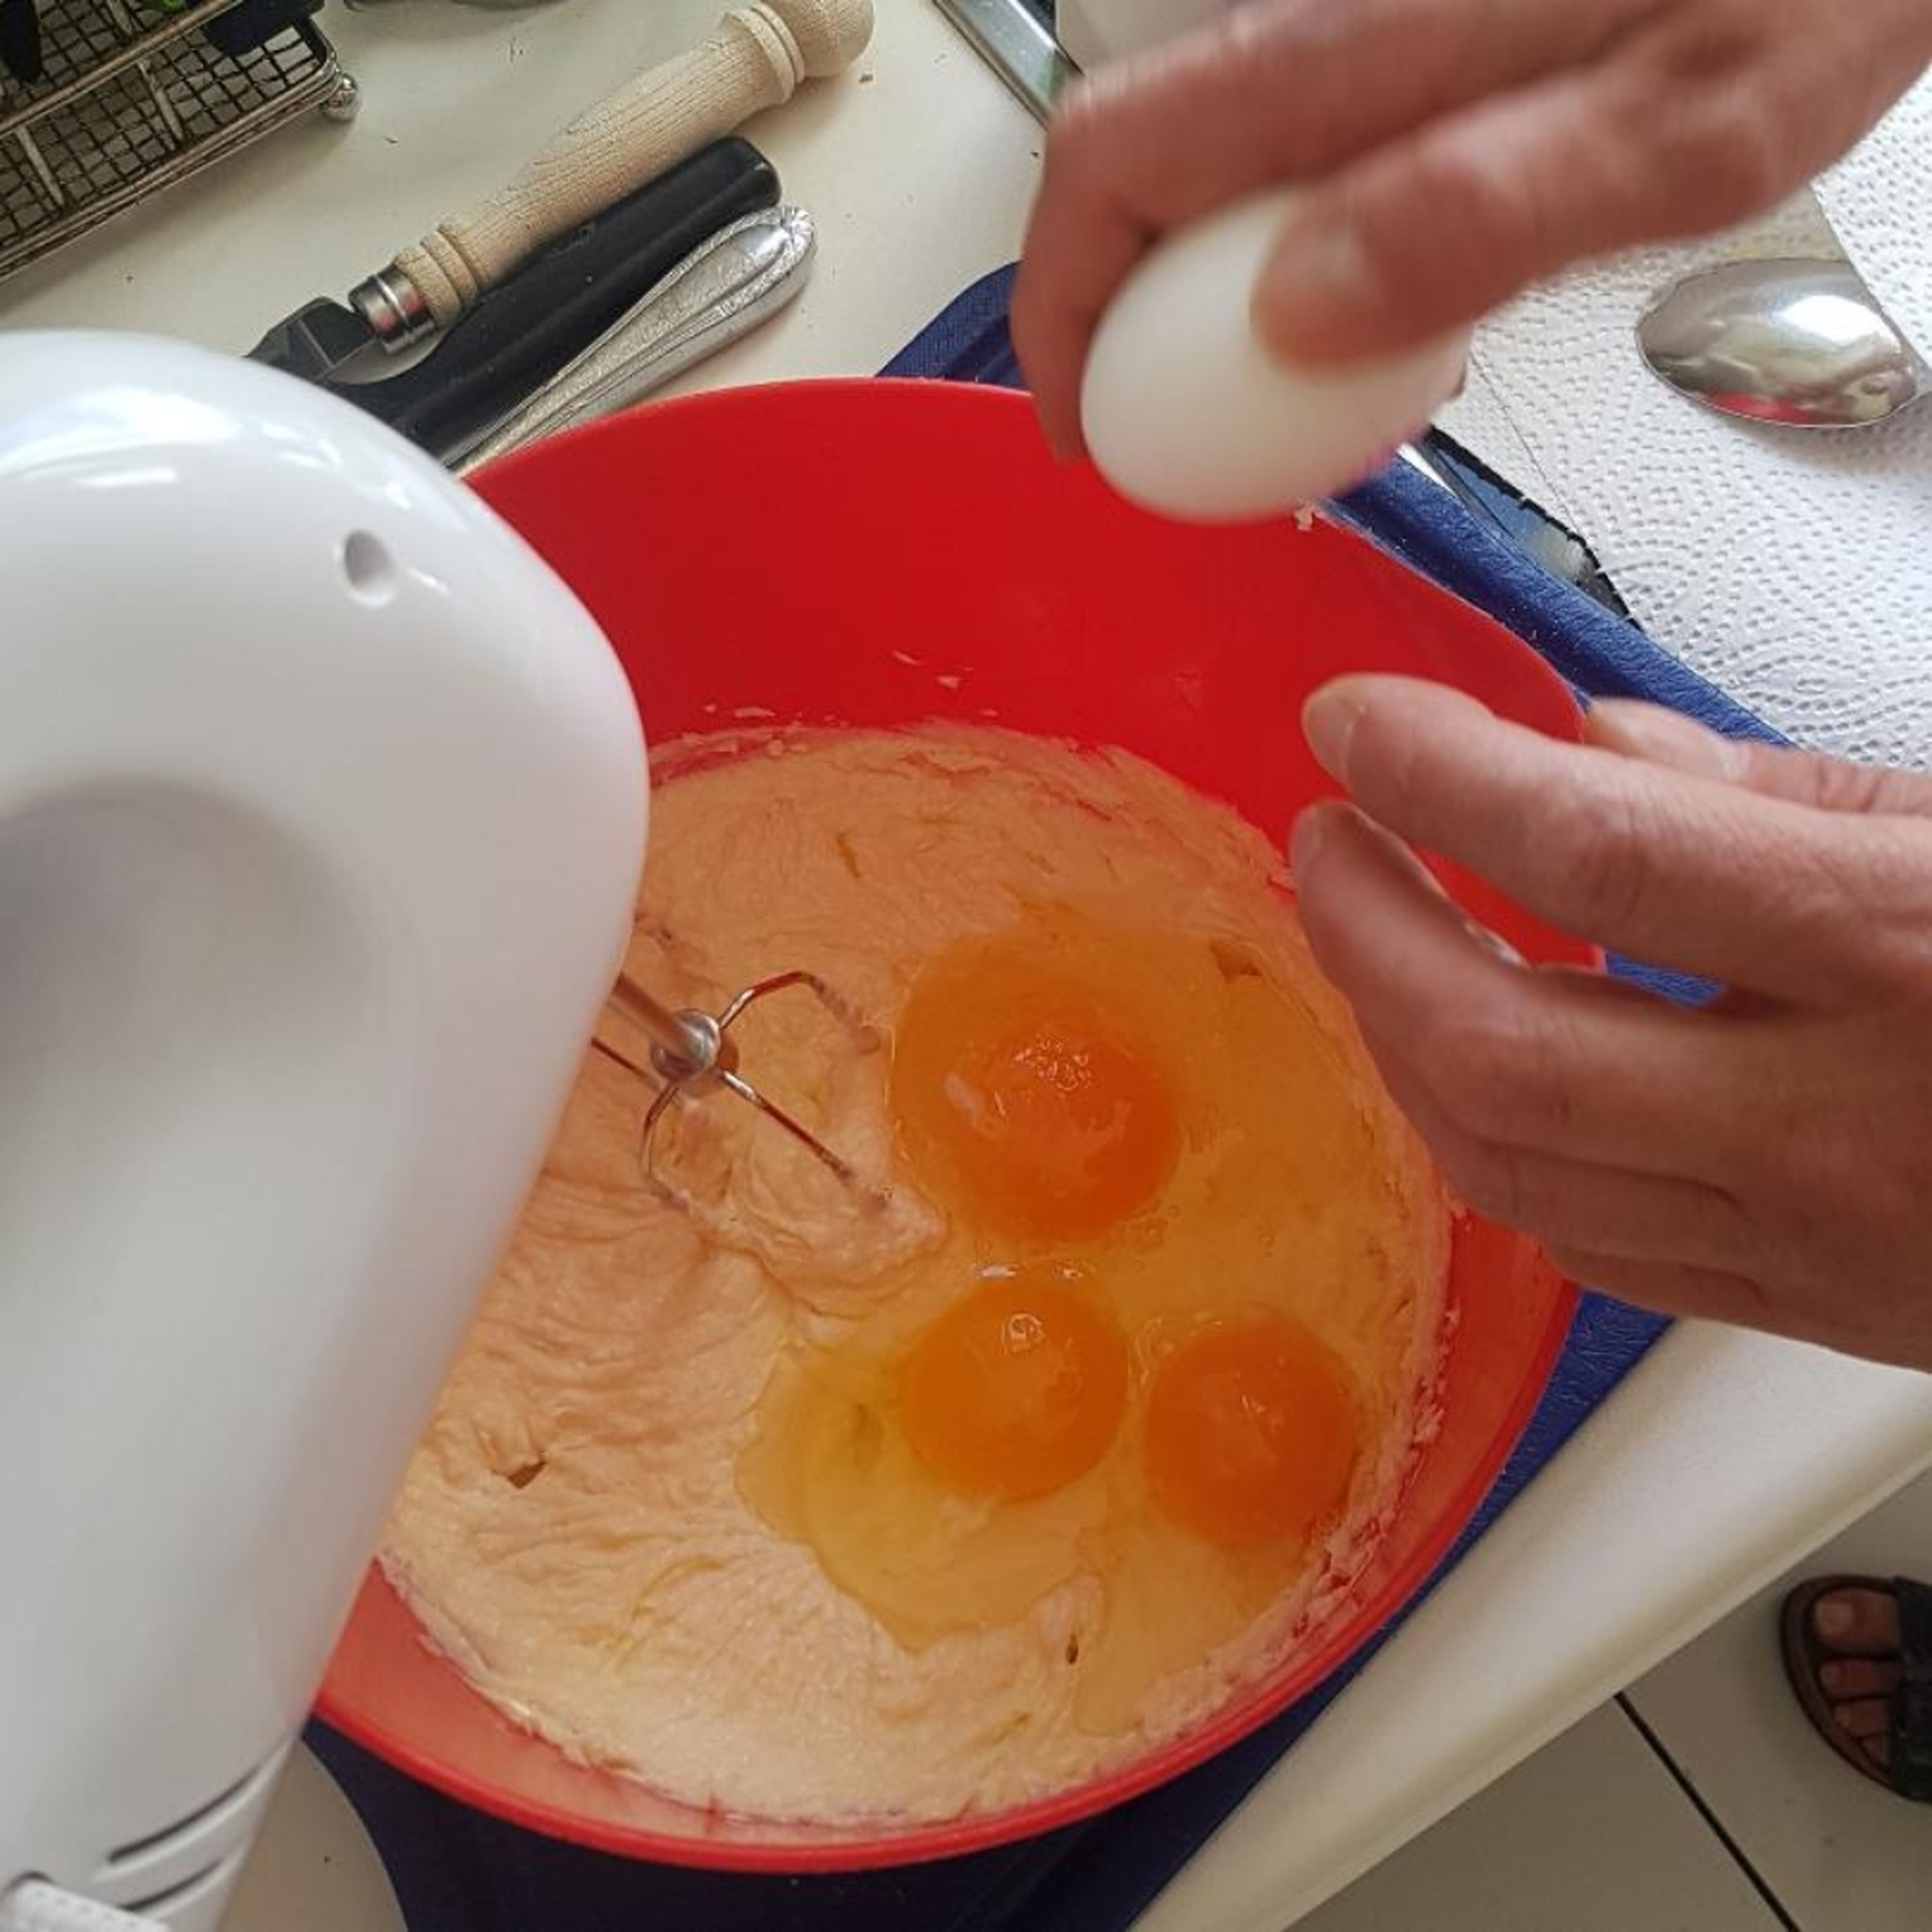 Add eggs.